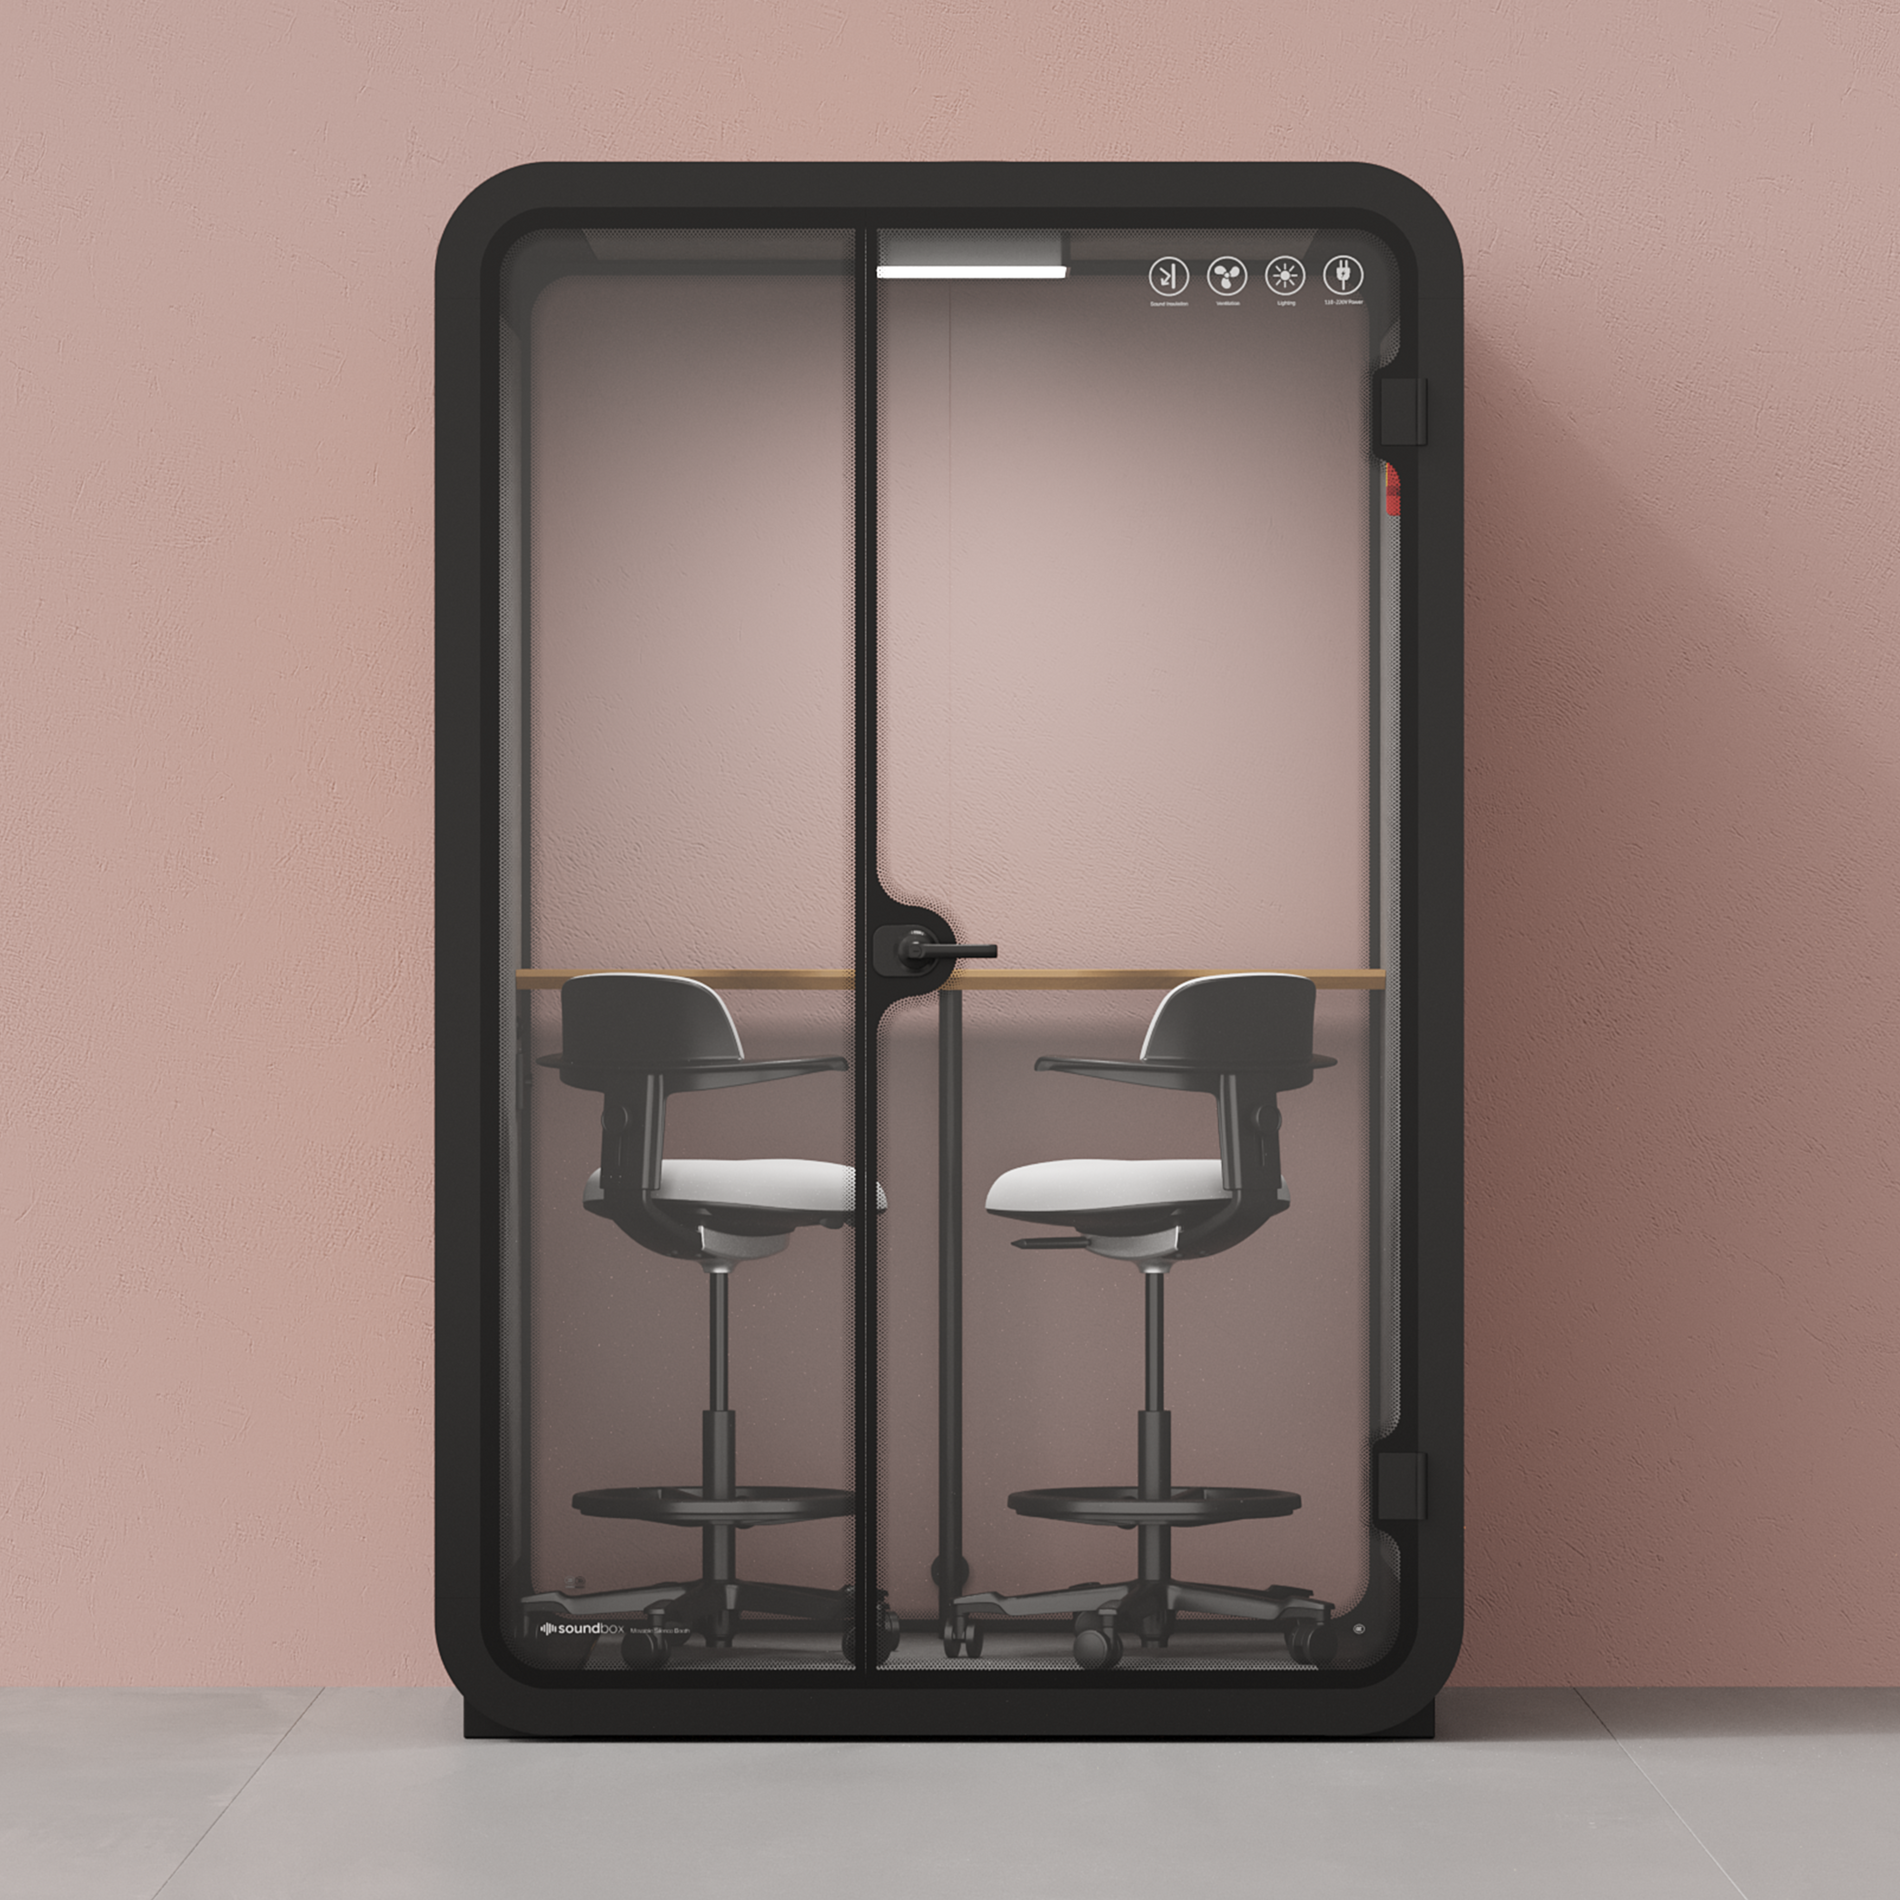 Quell Caseta de Oficina para Dos PersonasCharcoal / Dark Gray / Dual Zoom Room + Device Shelf + 2 Barstools